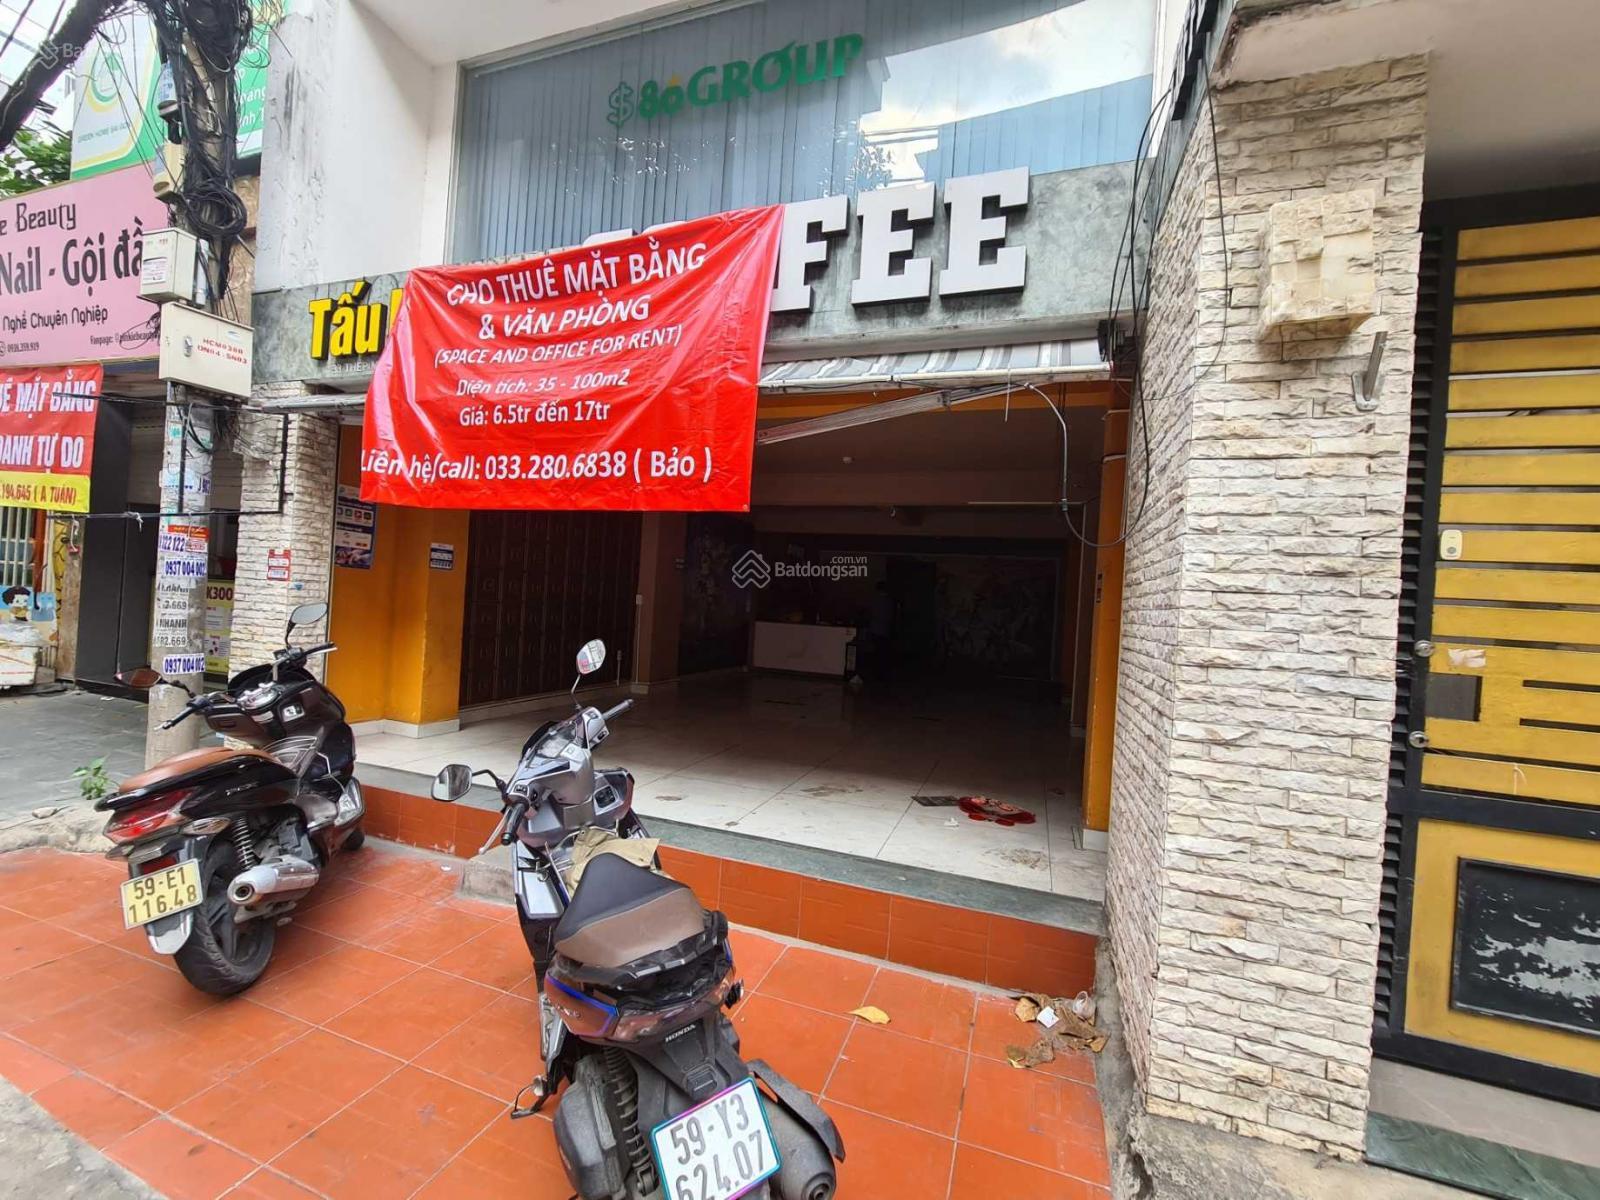 Cho thuê mặt bằng quận Tân Bình làm quán cafe hoặc shop trên đường Thép Mới. LH: 033.280.6838